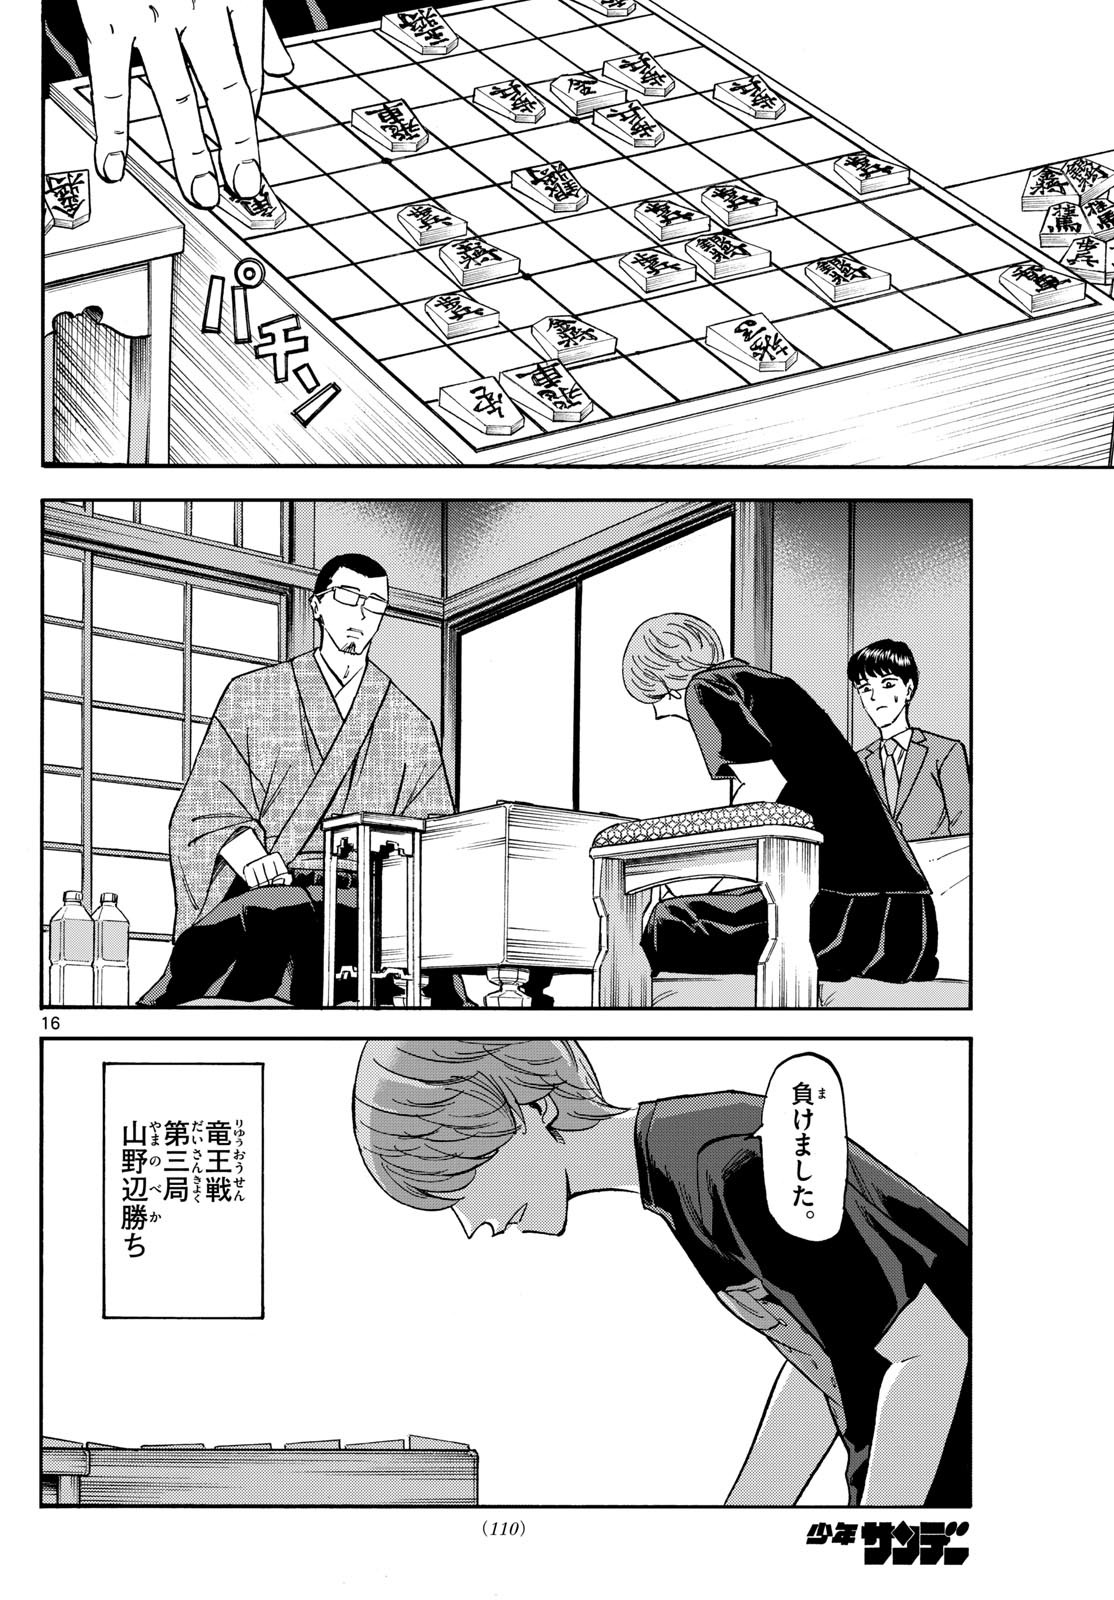 Ryu-to-Ichigo - Chapter 159 - Page 16